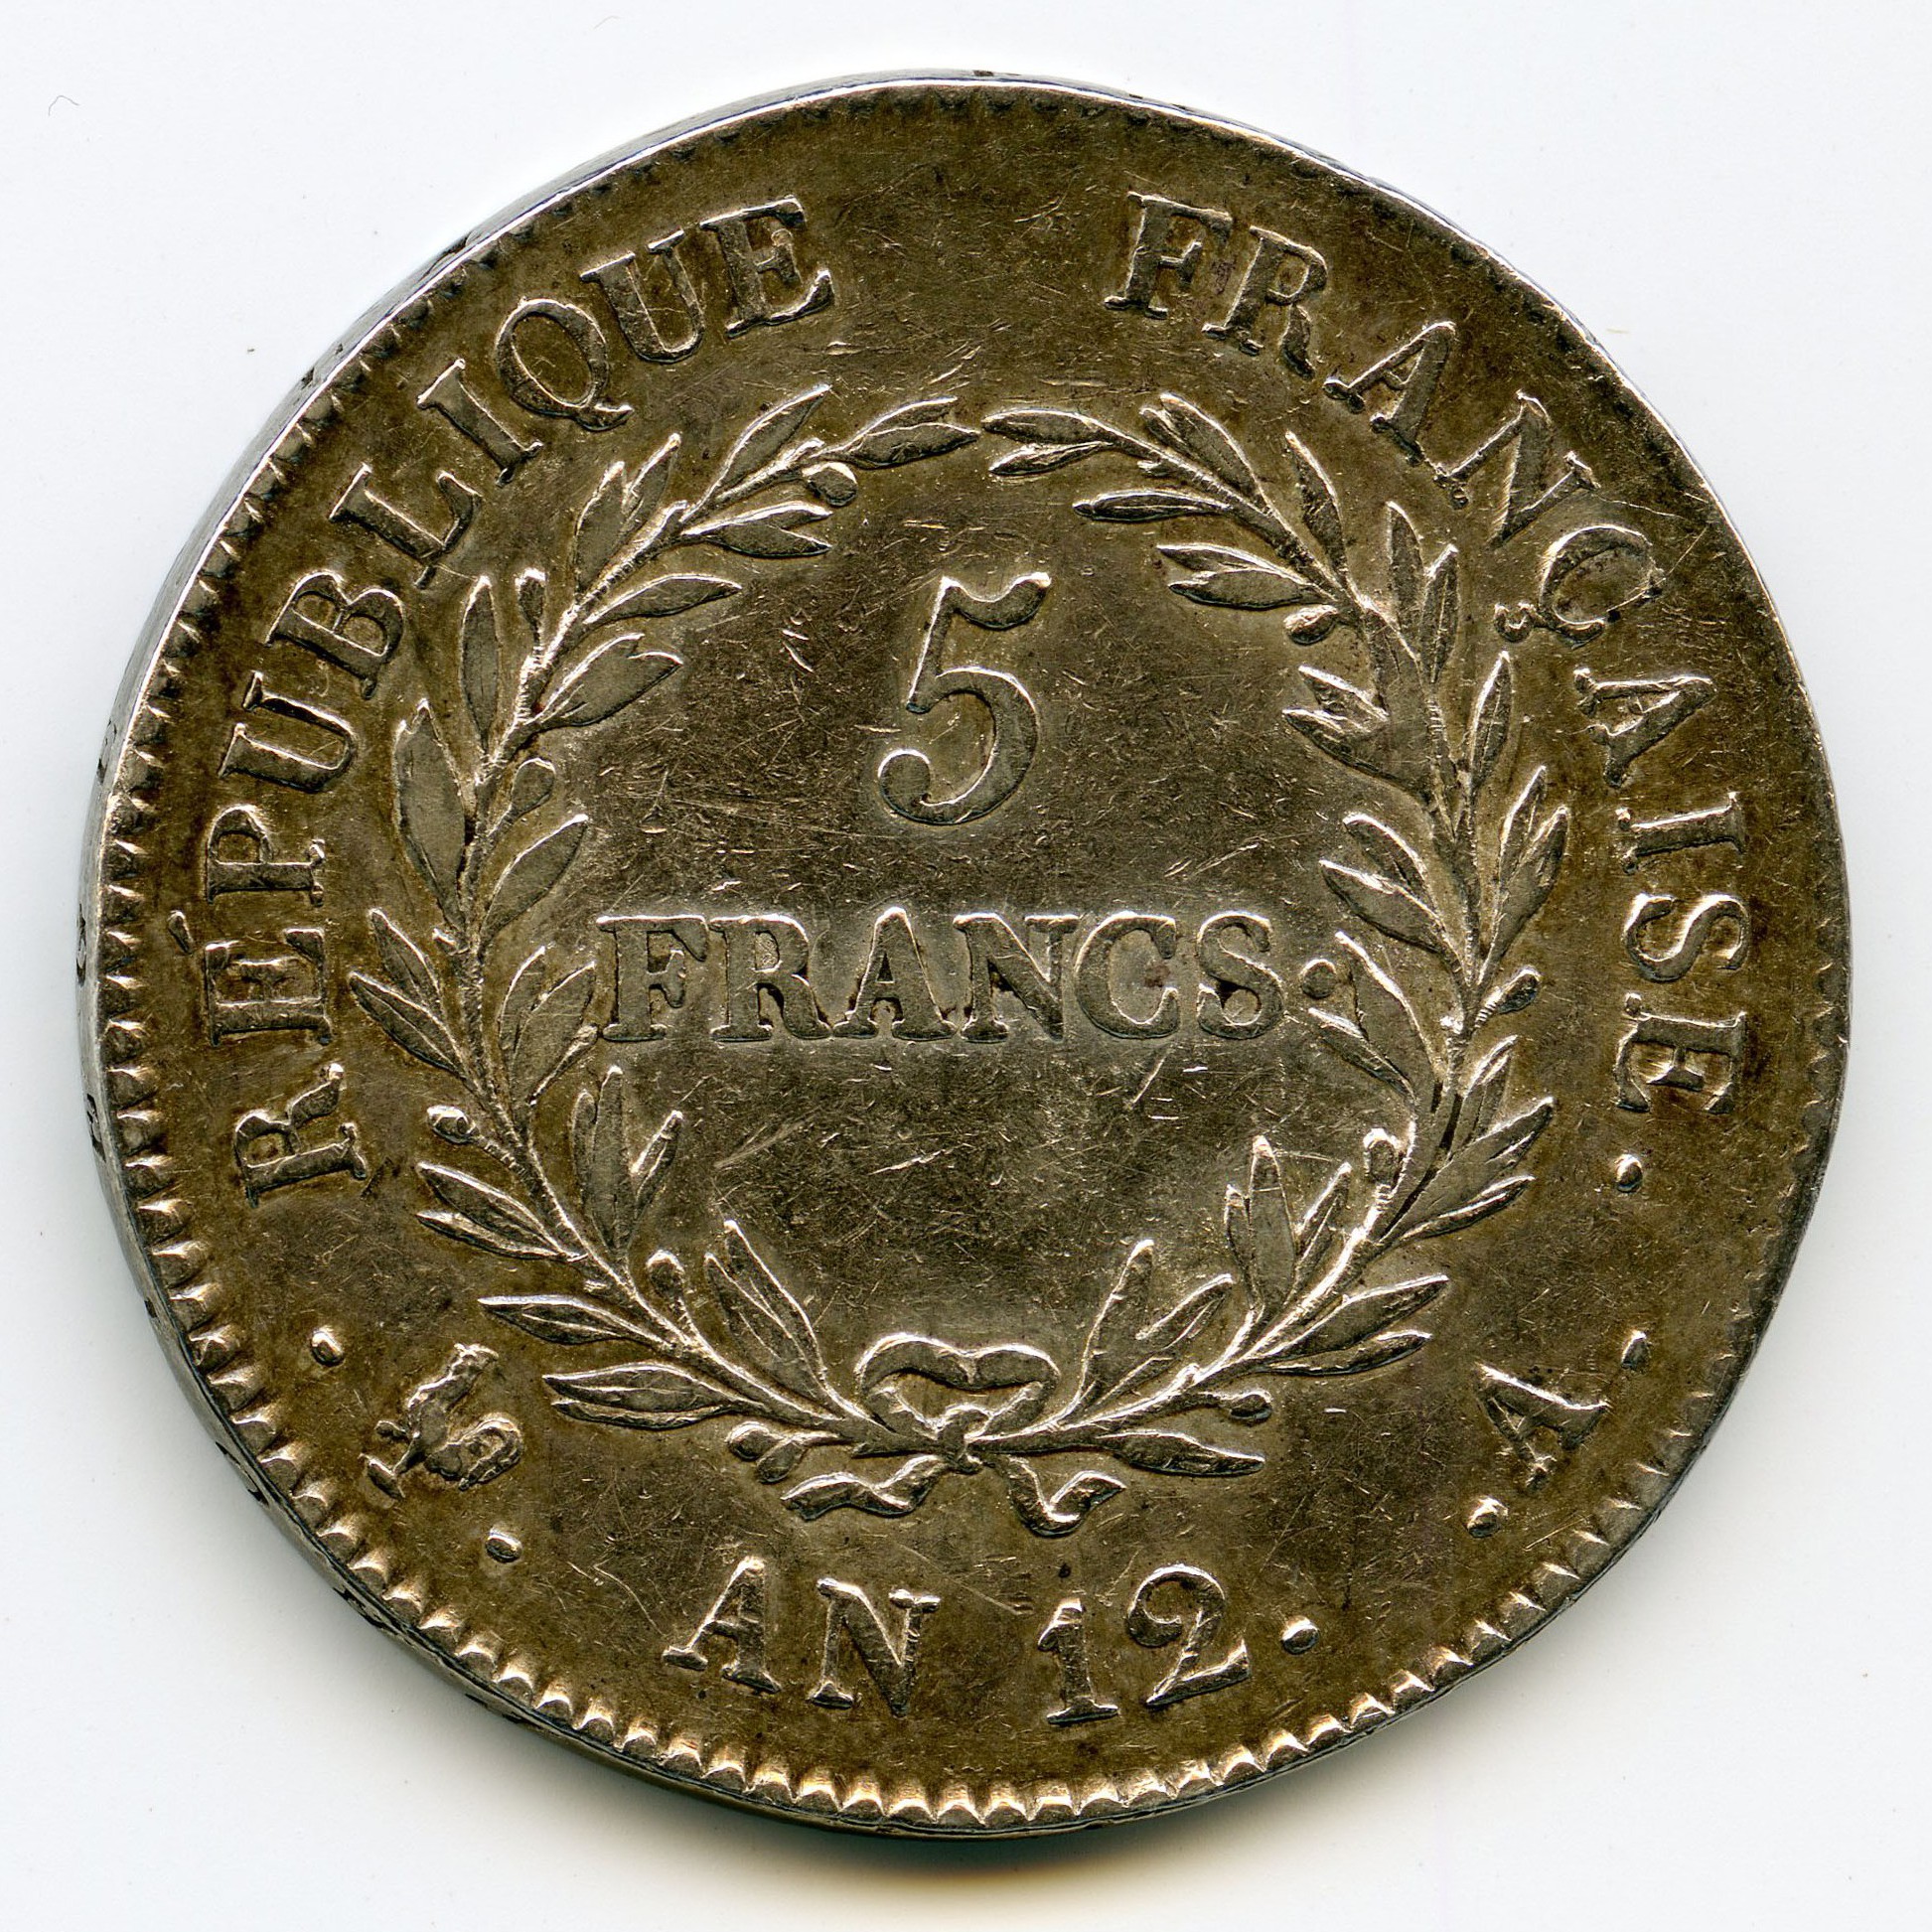 Le Consulat - 5 Francs - An 12 - Paris revers